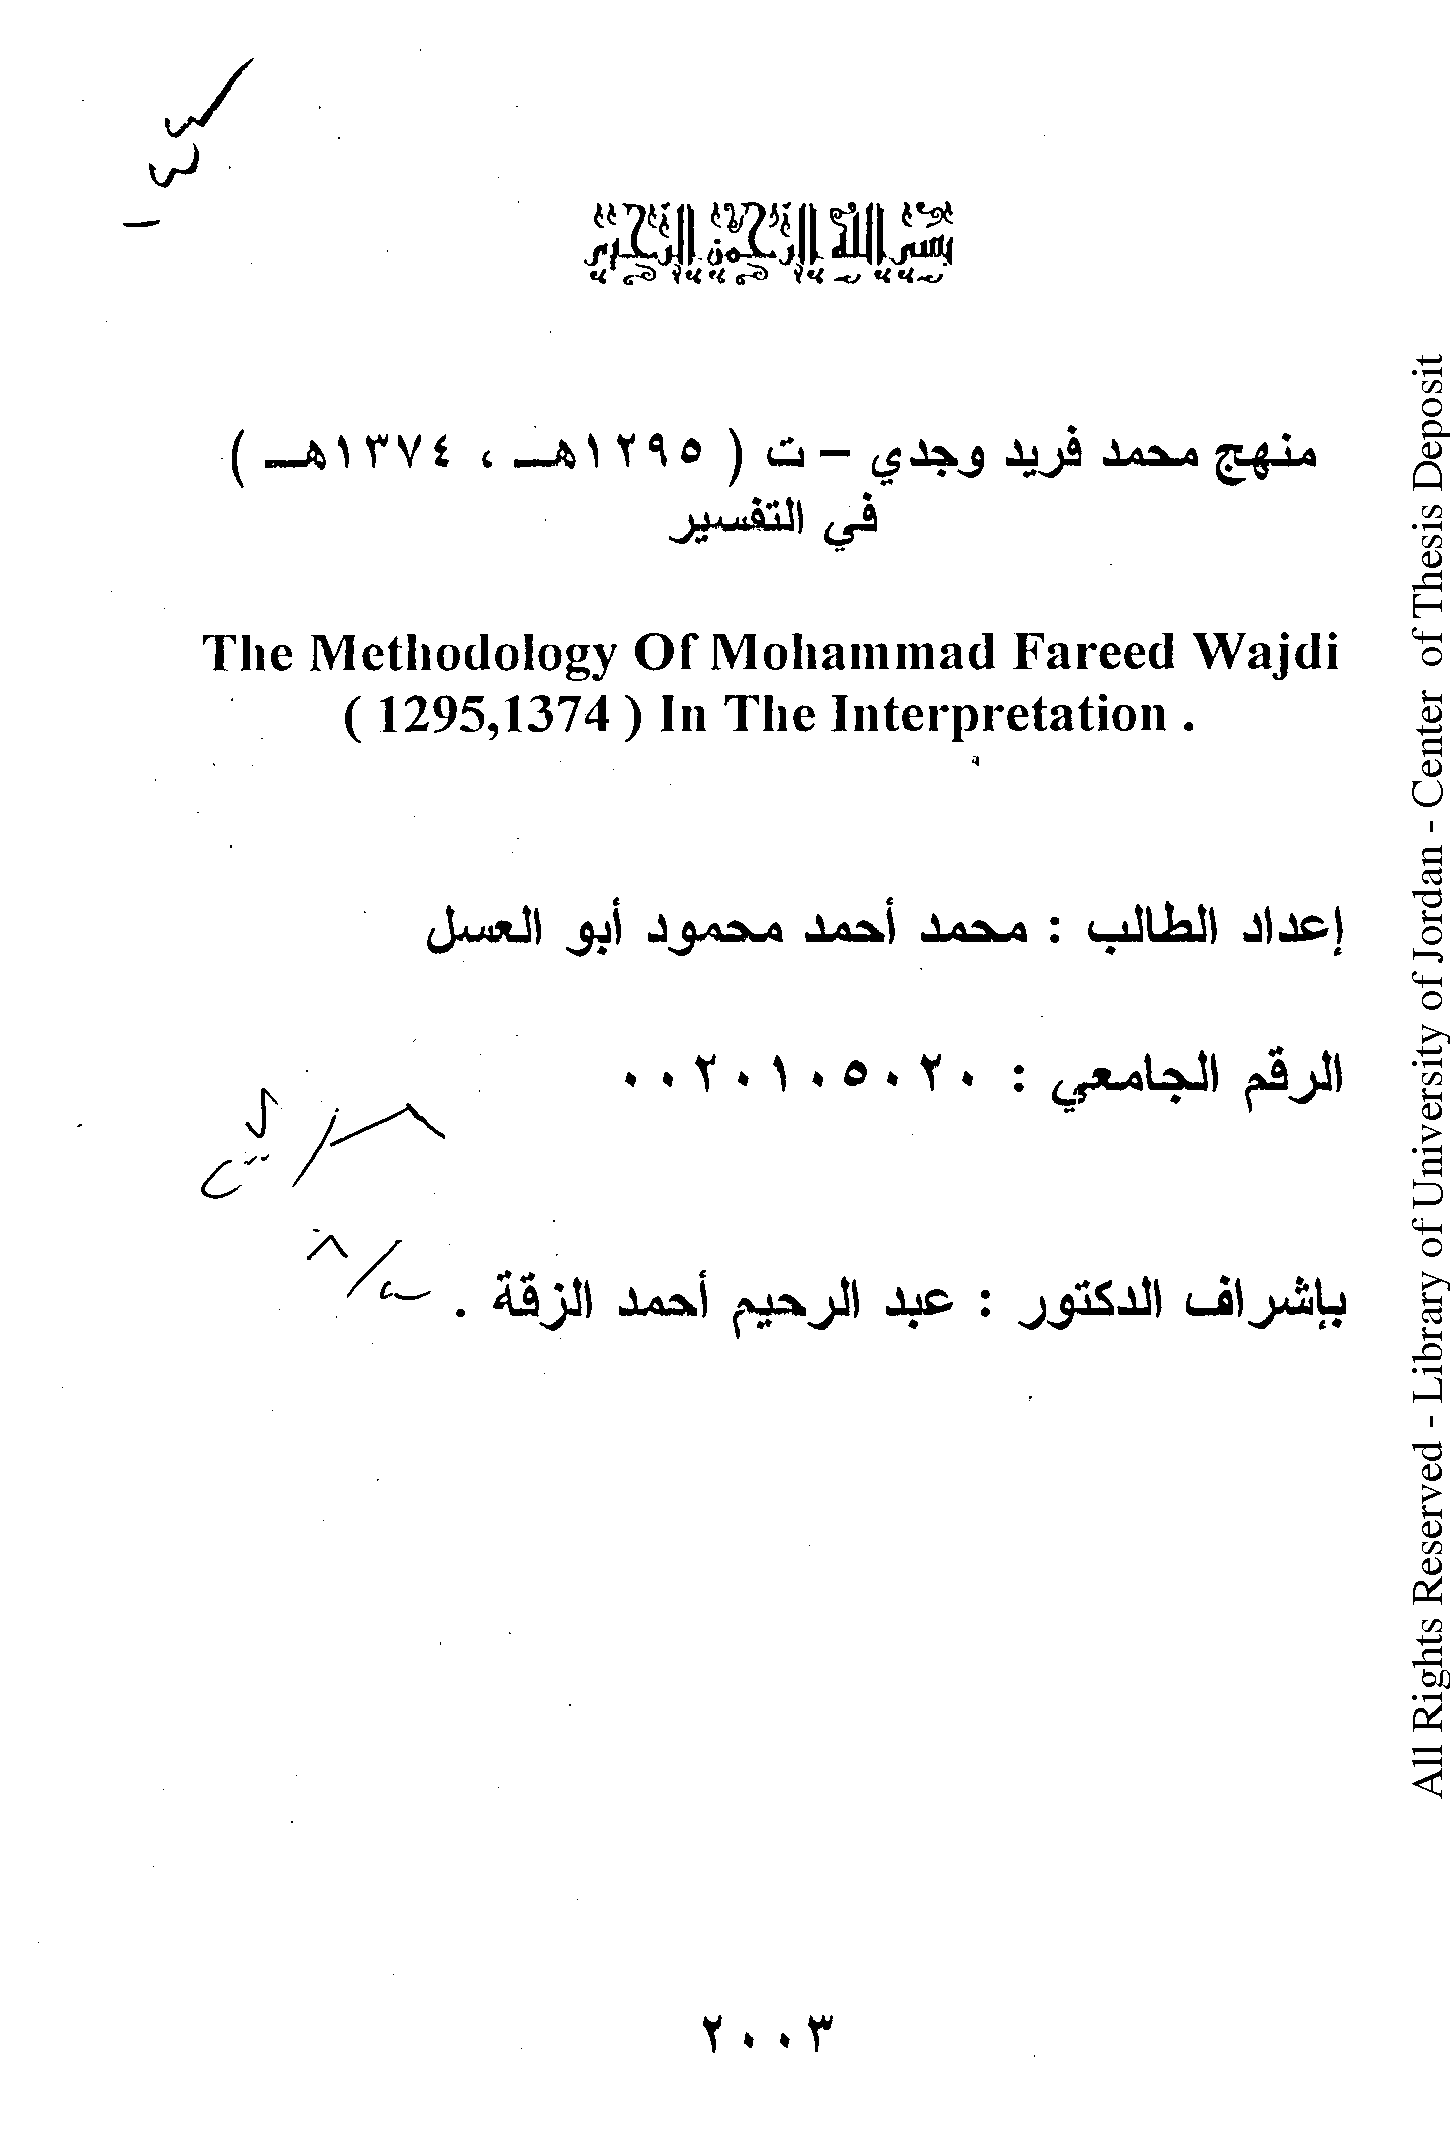 تحميل كتاب منهج محمد فريد وجدي (ت 1374) في التفسير لـِ: محمد أحمد محمود أبو العسل